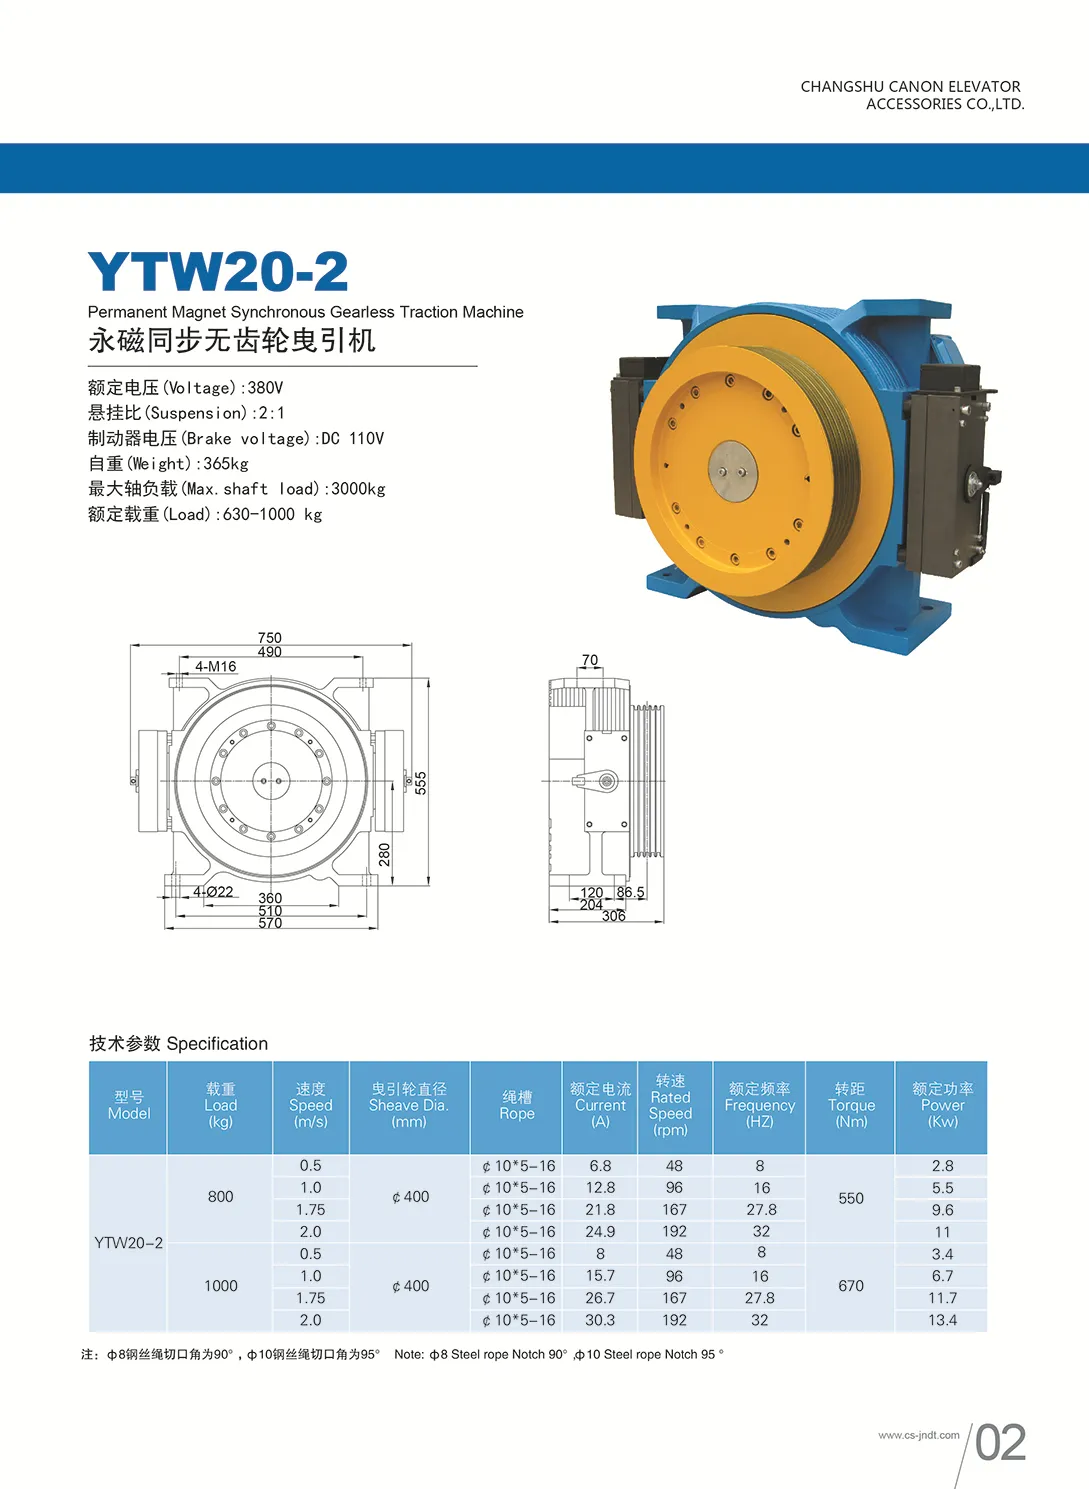 Hauptteil Des Aufzugs: Permanentmagnet Synchron Getriebemotor,  Traktionsmaschine, Modell YTW20 2 Von 1.712,08 €